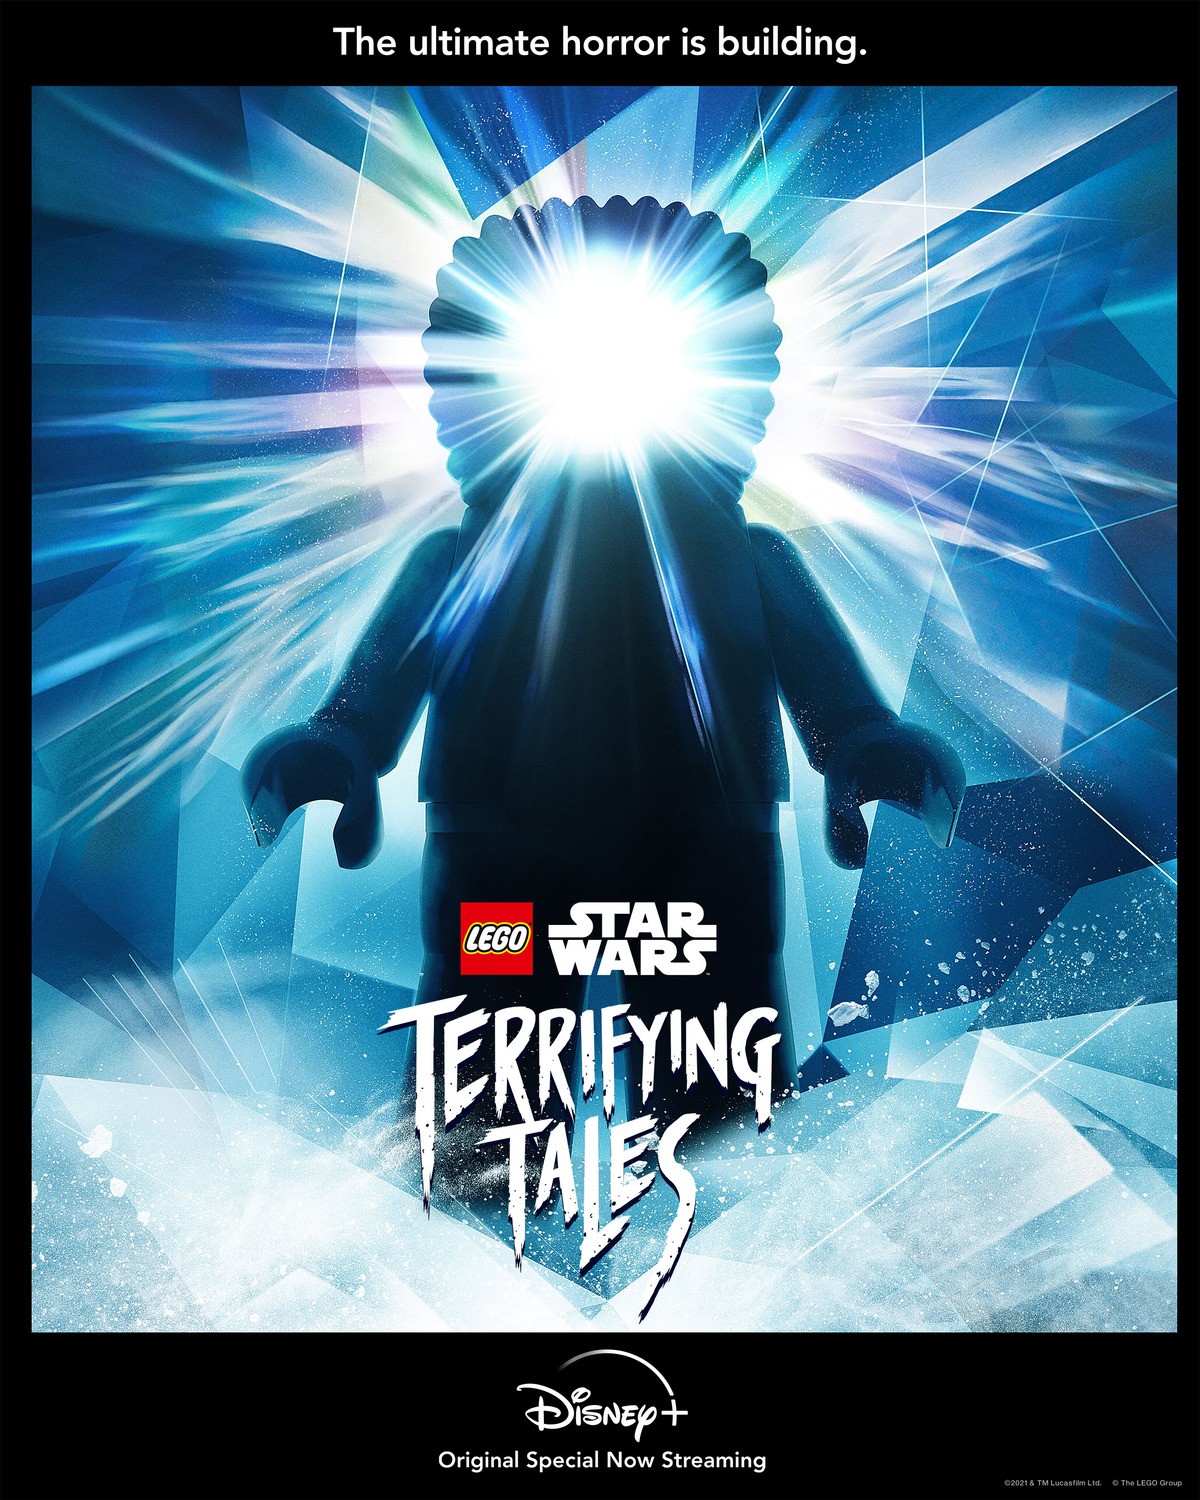 ЛЕГО Звездные войны: Ужасающие истории / Lego Star Wars Terrifying Tales (2021) отзывы. Рецензии. Новости кино. Актеры фильма ЛЕГО Звездные войны: Ужасающие истории. Отзывы о фильме ЛЕГО Звездные войны: Ужасающие истории